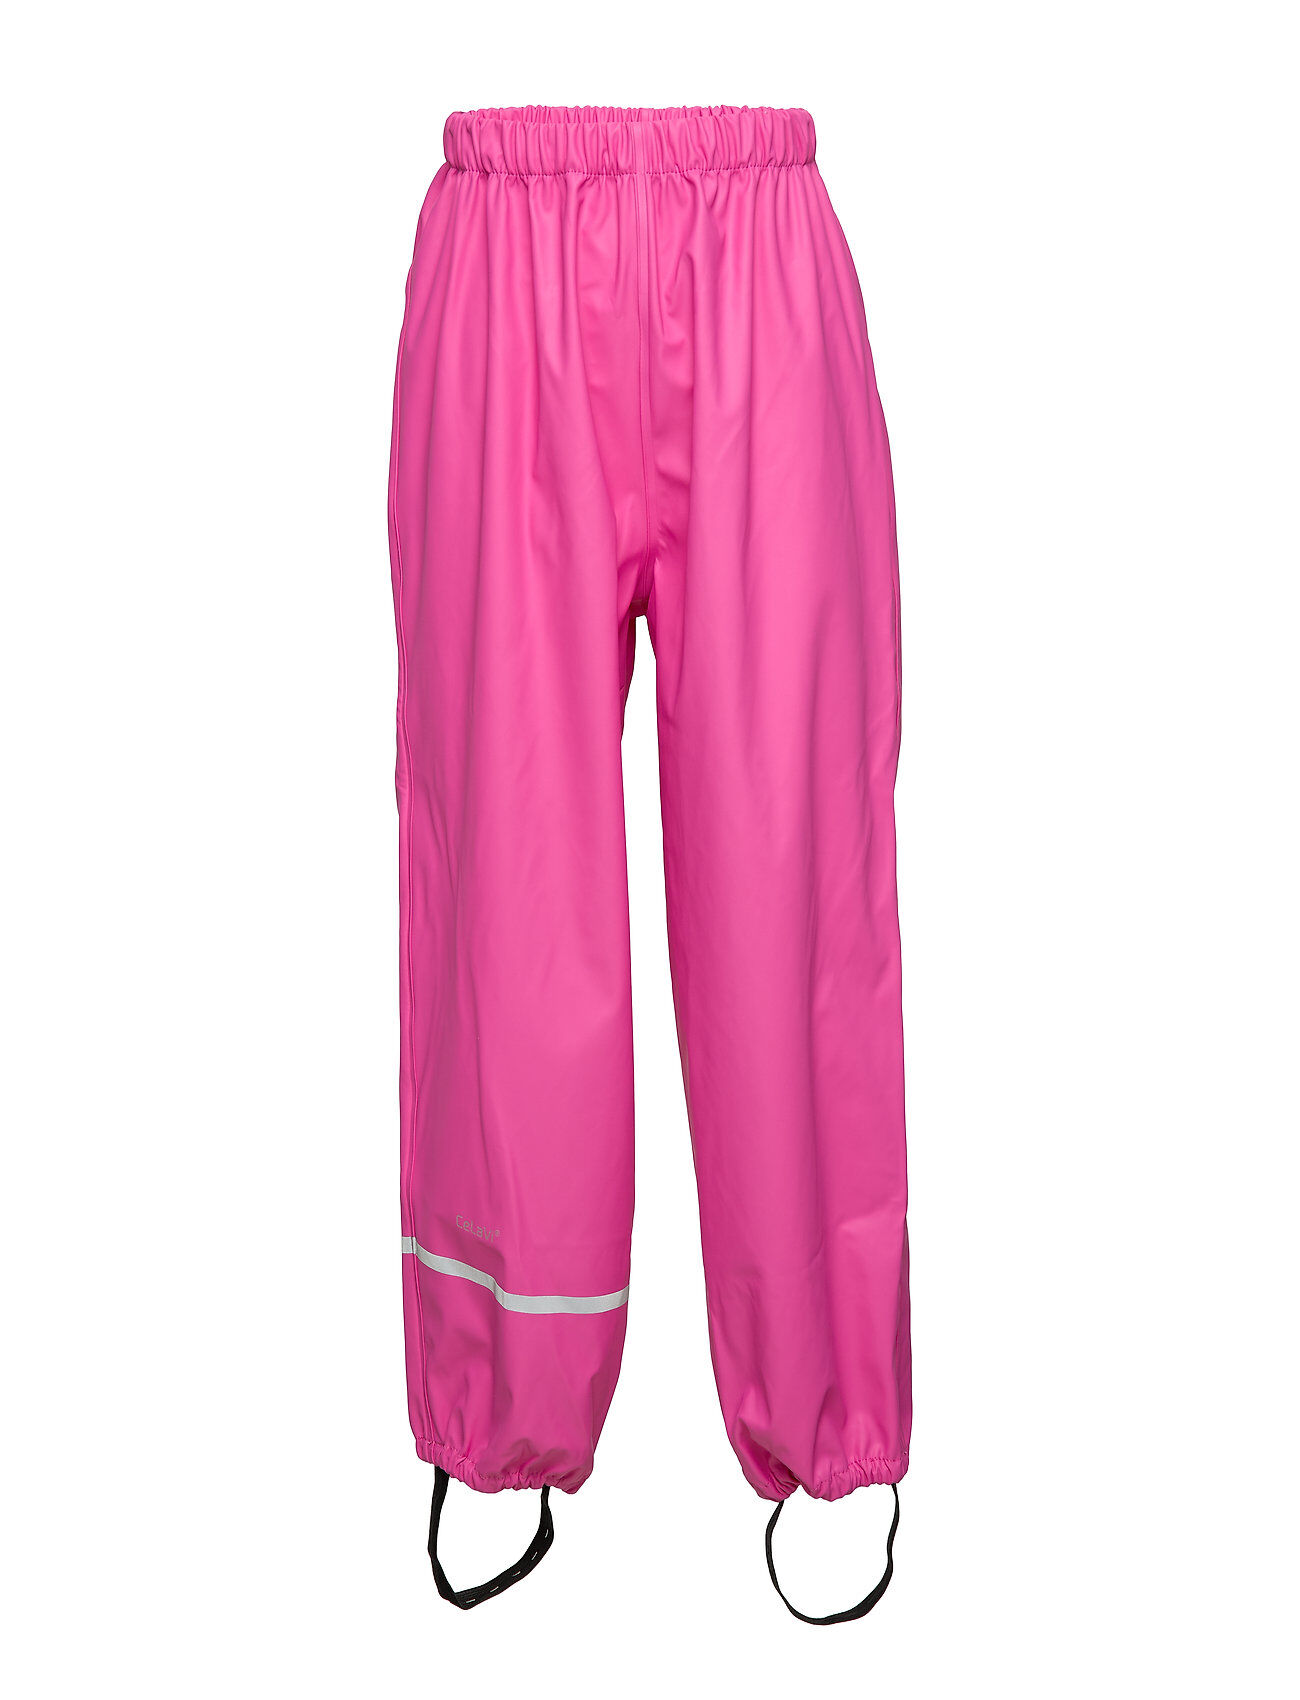 CeLaVi Rainwear Pants, Solid Outerwear Rainwear Bottoms Rosa CeLaVi